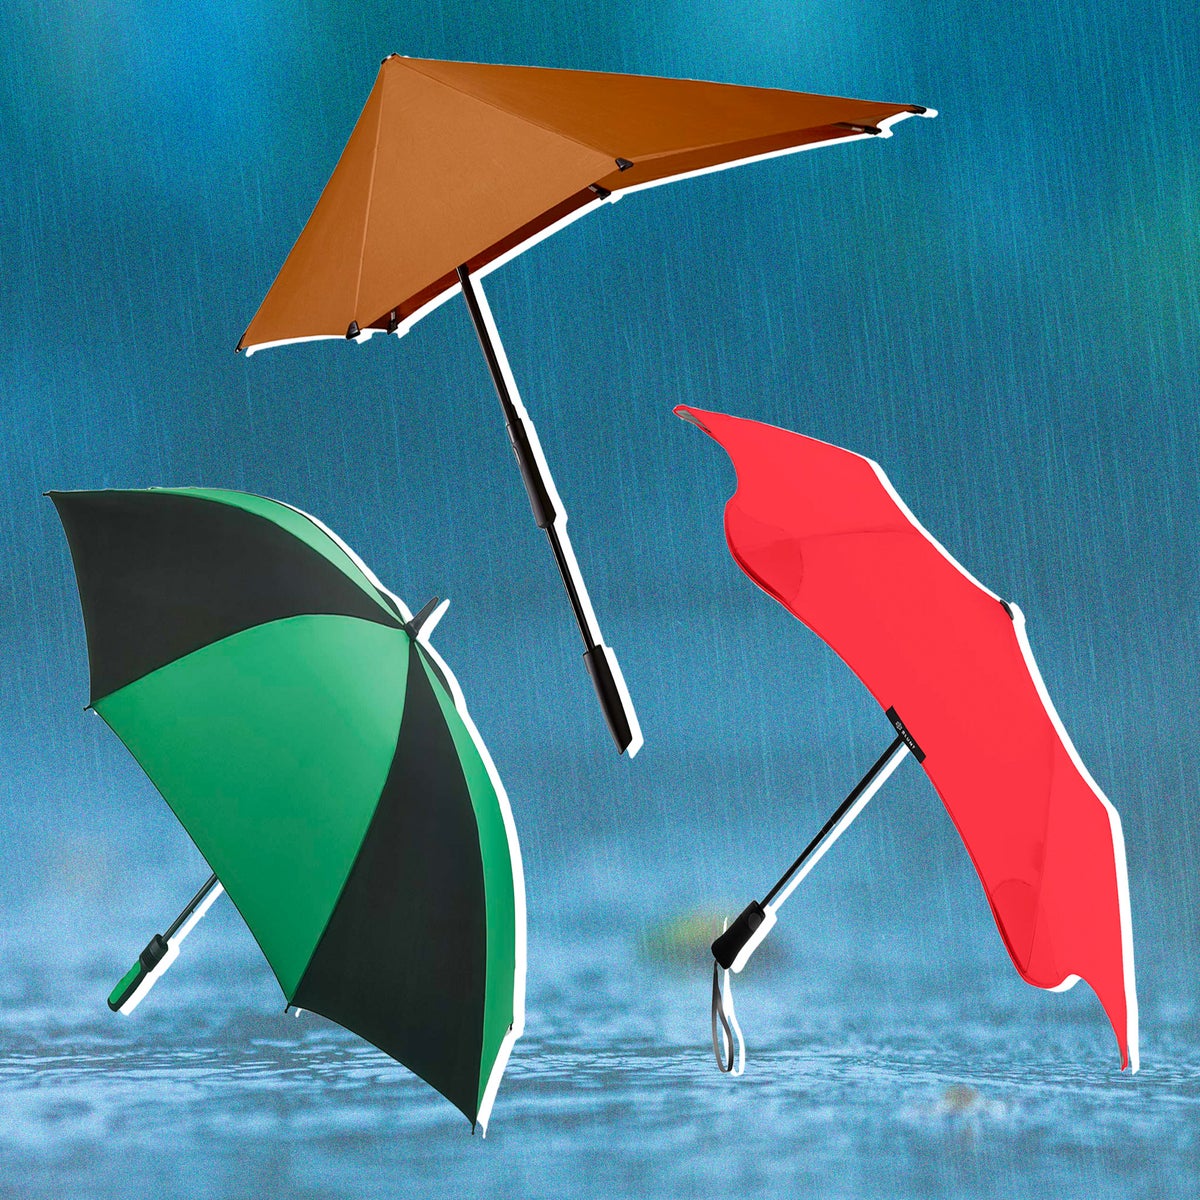 pretty rain umbrellas